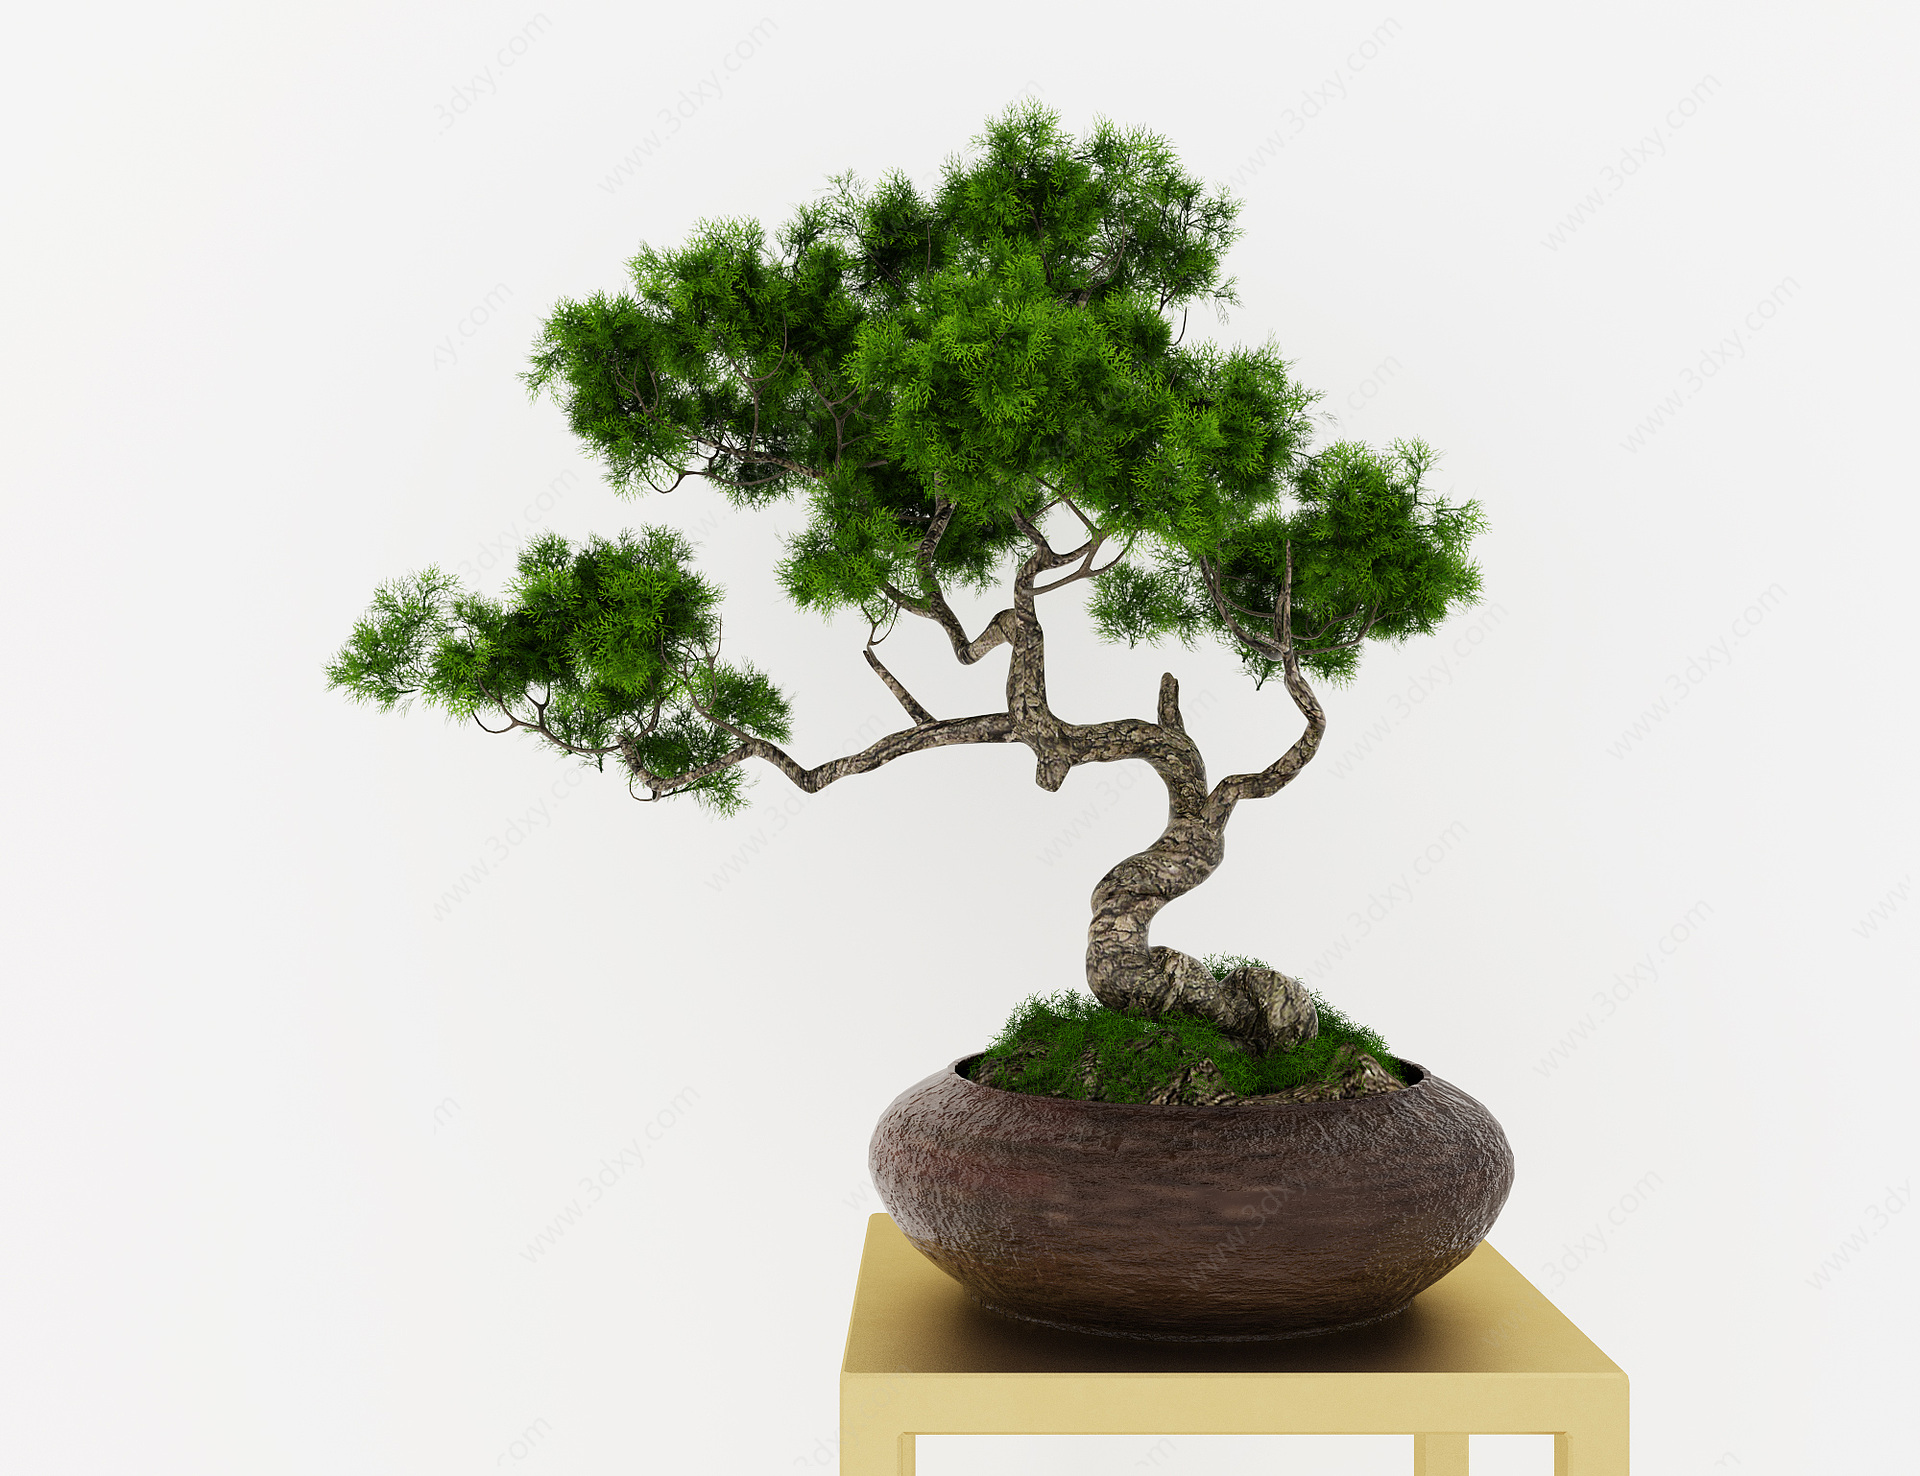 盆栽绿植摆件松树摆件3D模型